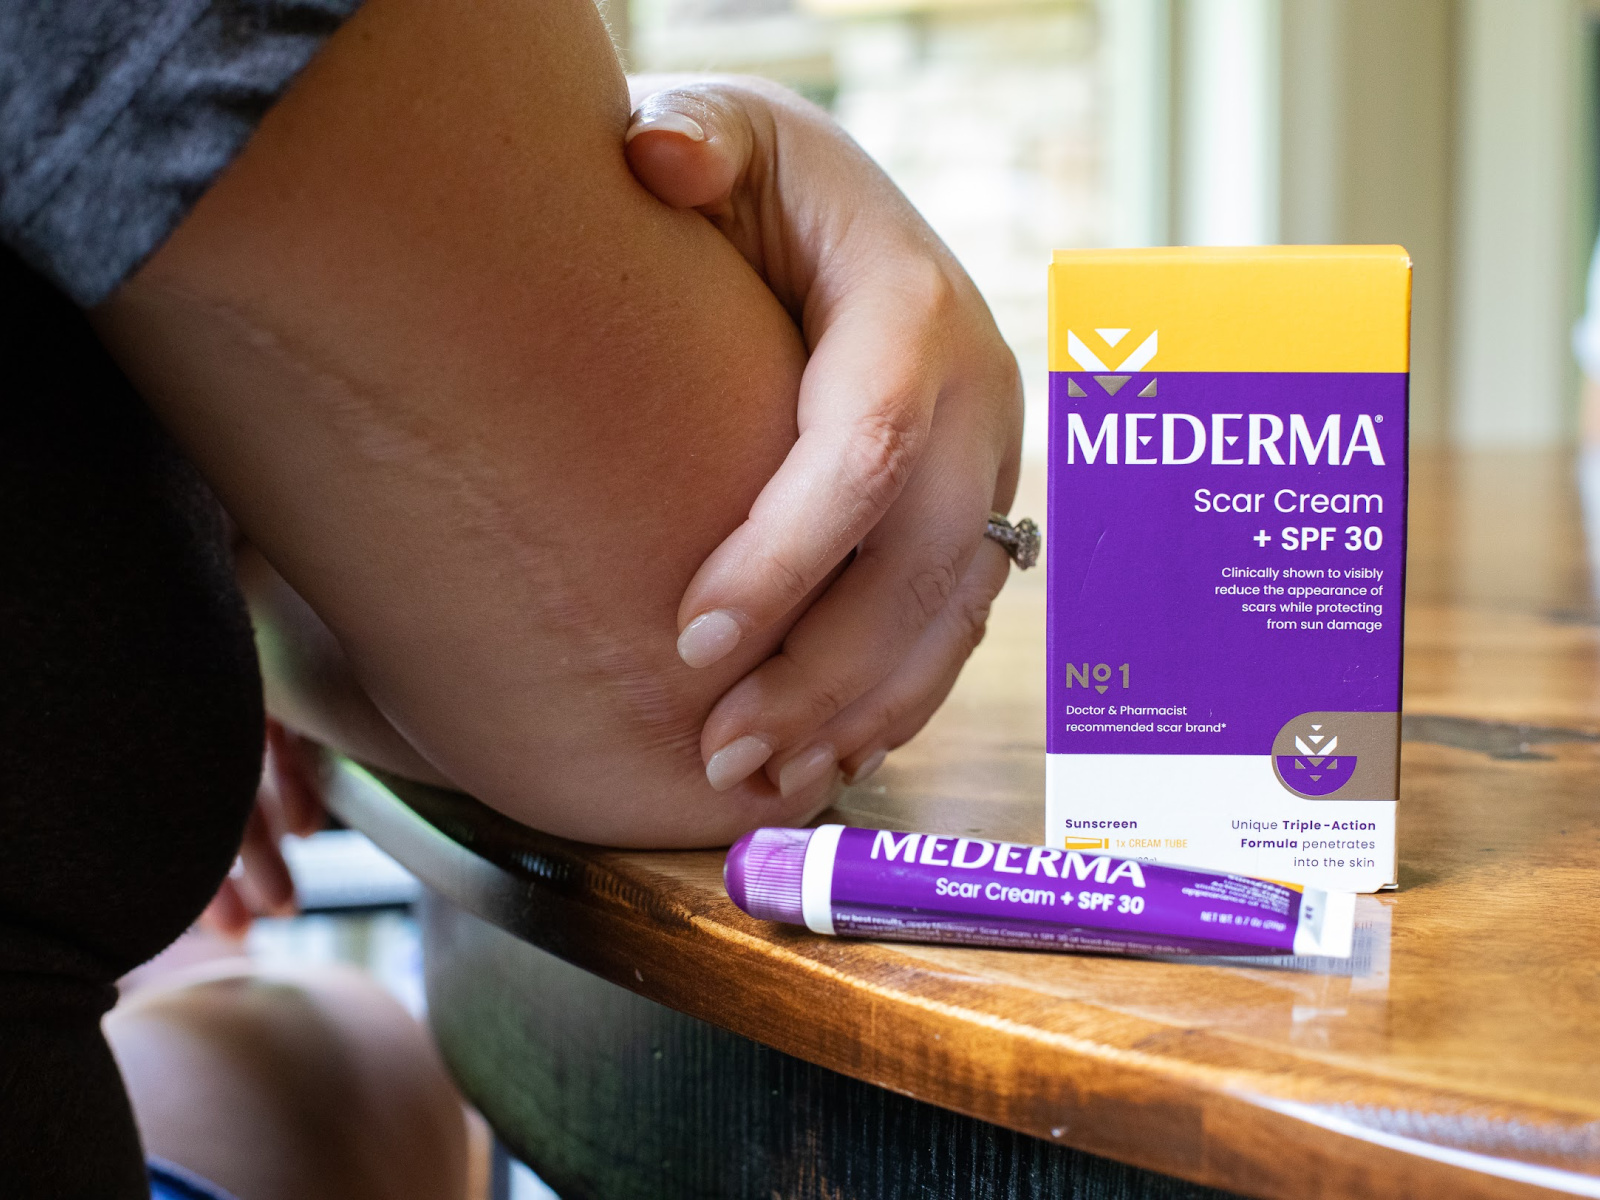 Mederma Scar Cream + SPF 30 Just $4.99 At Publix (Regular Price $19.99)